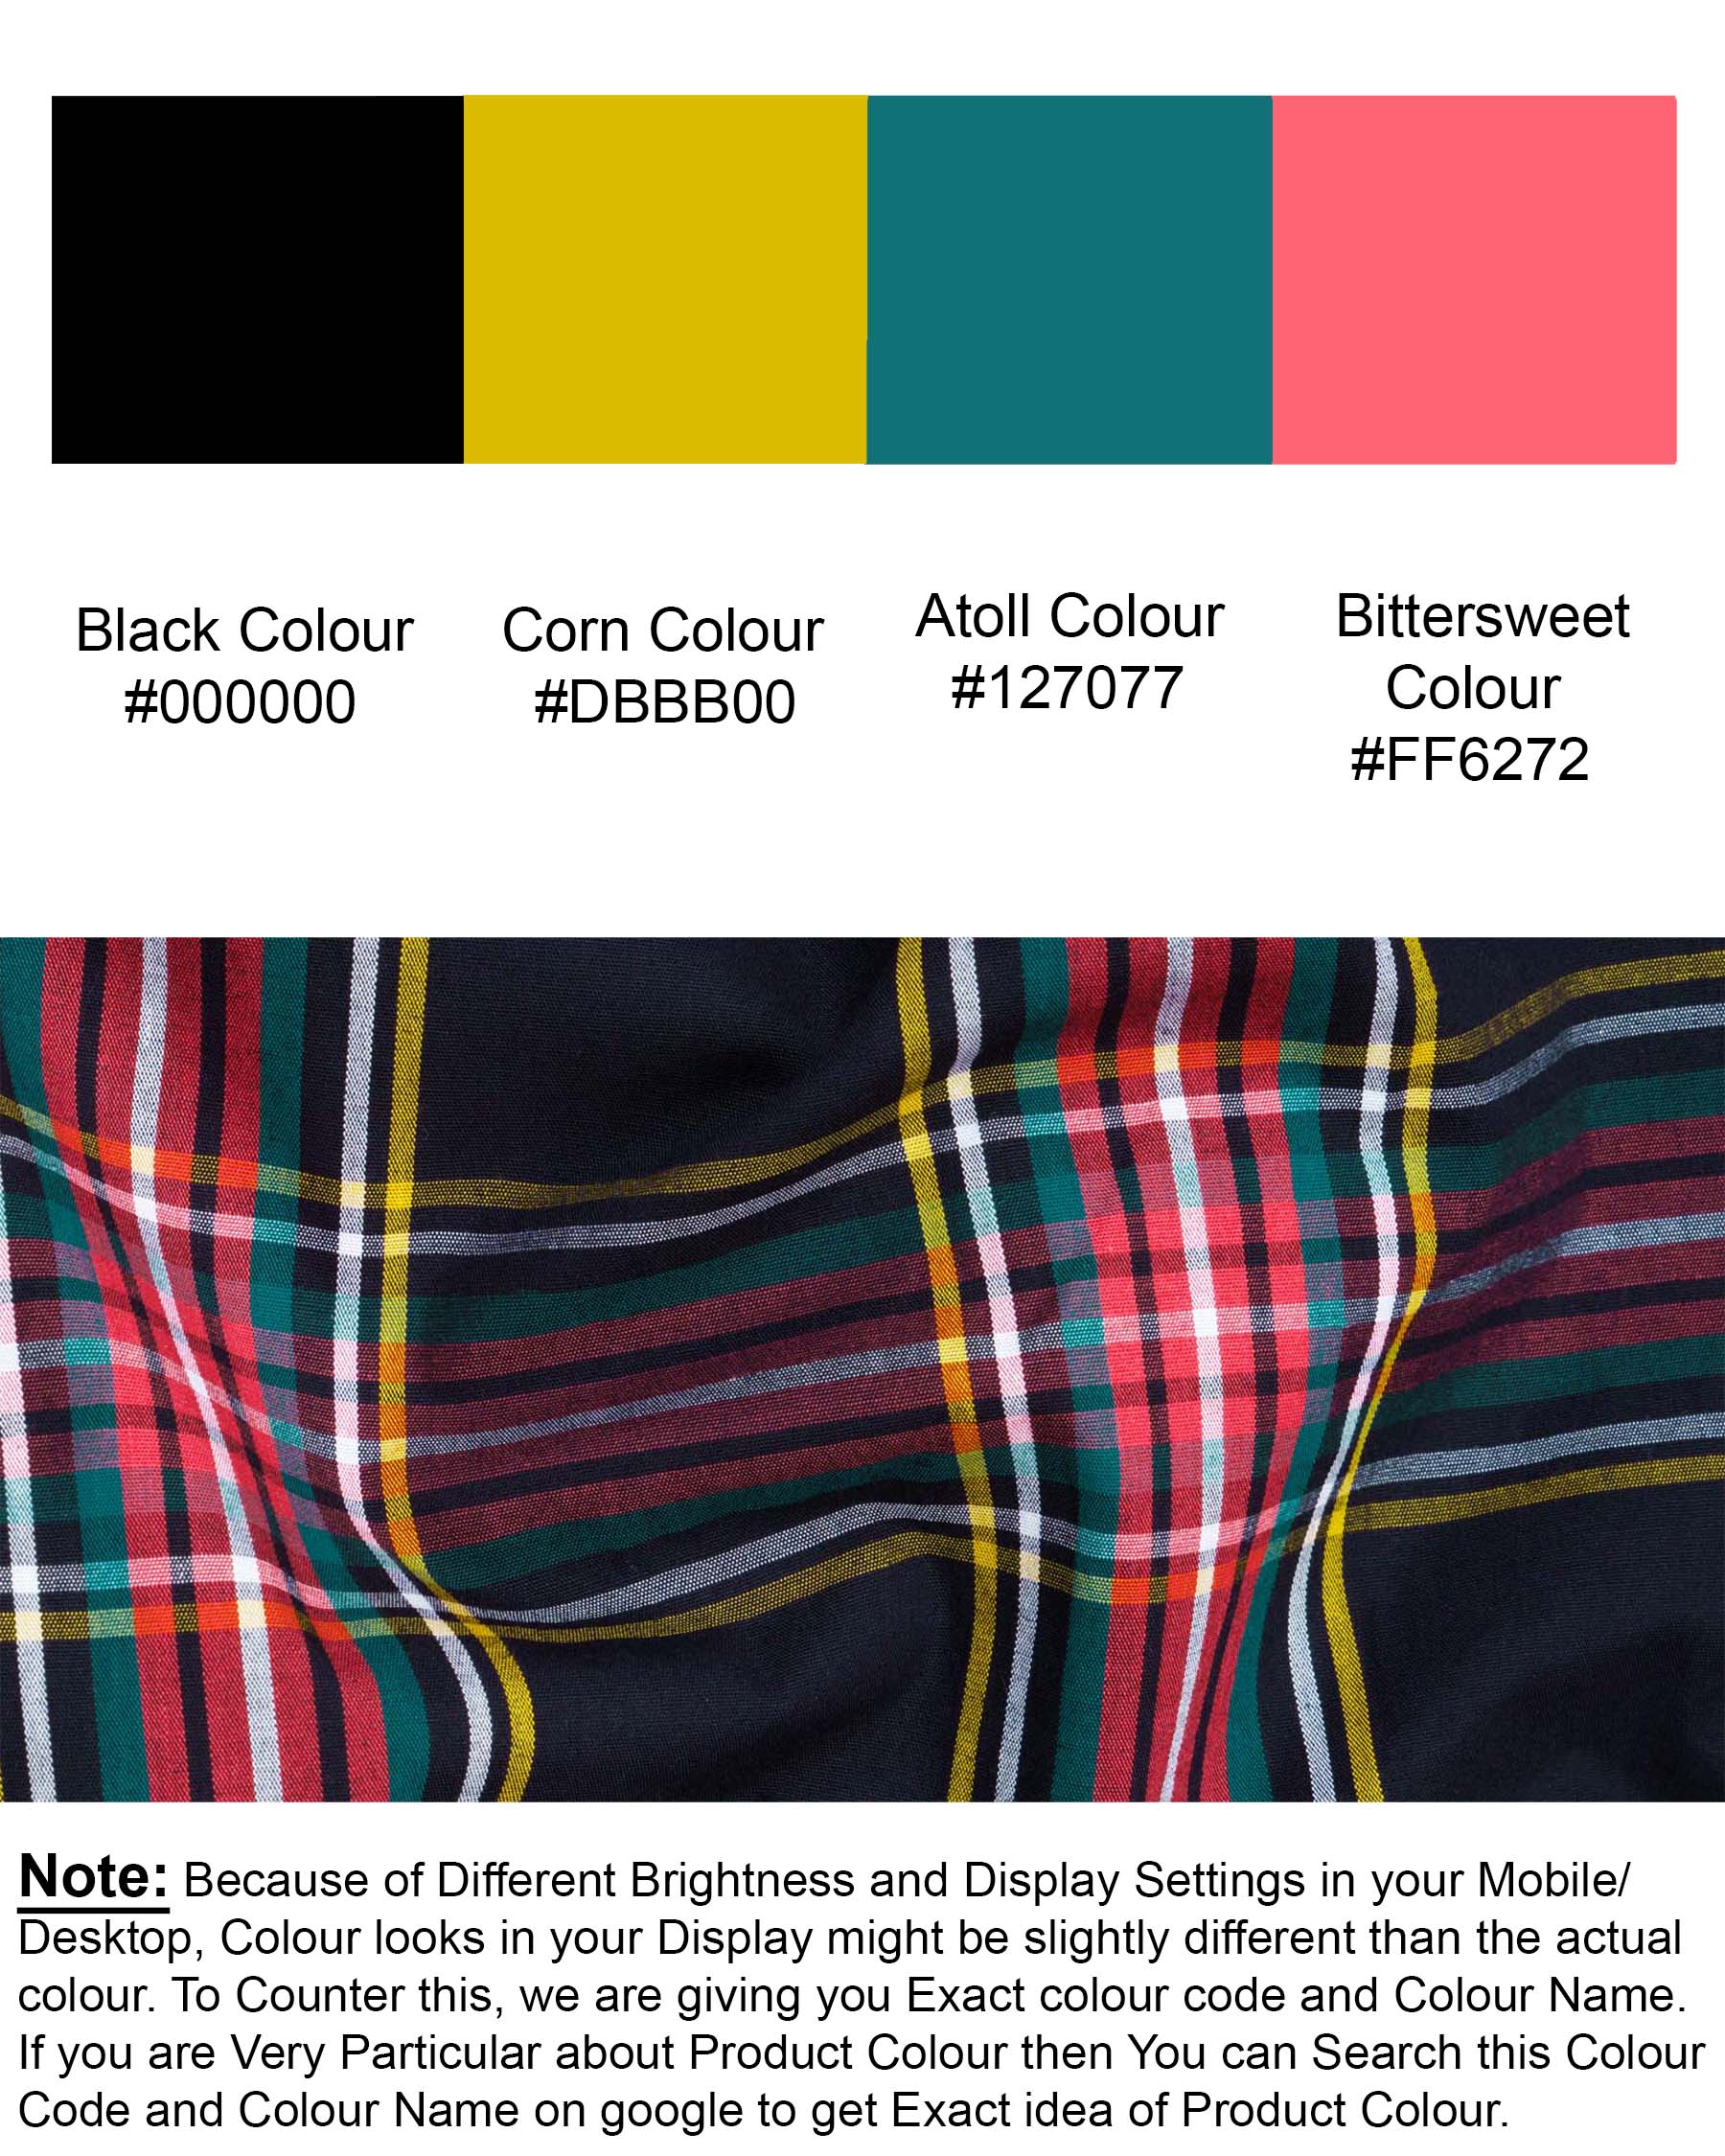 Jade Black Multicolour Plaid Premium Cotton Shirt 7117-BLK-38,7117-BLK-H-38,7117-BLK-39,7117-BLK-H-39,7117-BLK-40,7117-BLK-H-40,7117-BLK-42,7117-BLK-H-42,7117-BLK-44,7117-BLK-H-44,7117-BLK-46,7117-BLK-H-46,7117-BLK-48,7117-BLK-H-48,7117-BLK-50,7117-BLK-H-50,7117-BLK-52,7117-BLK-H-52